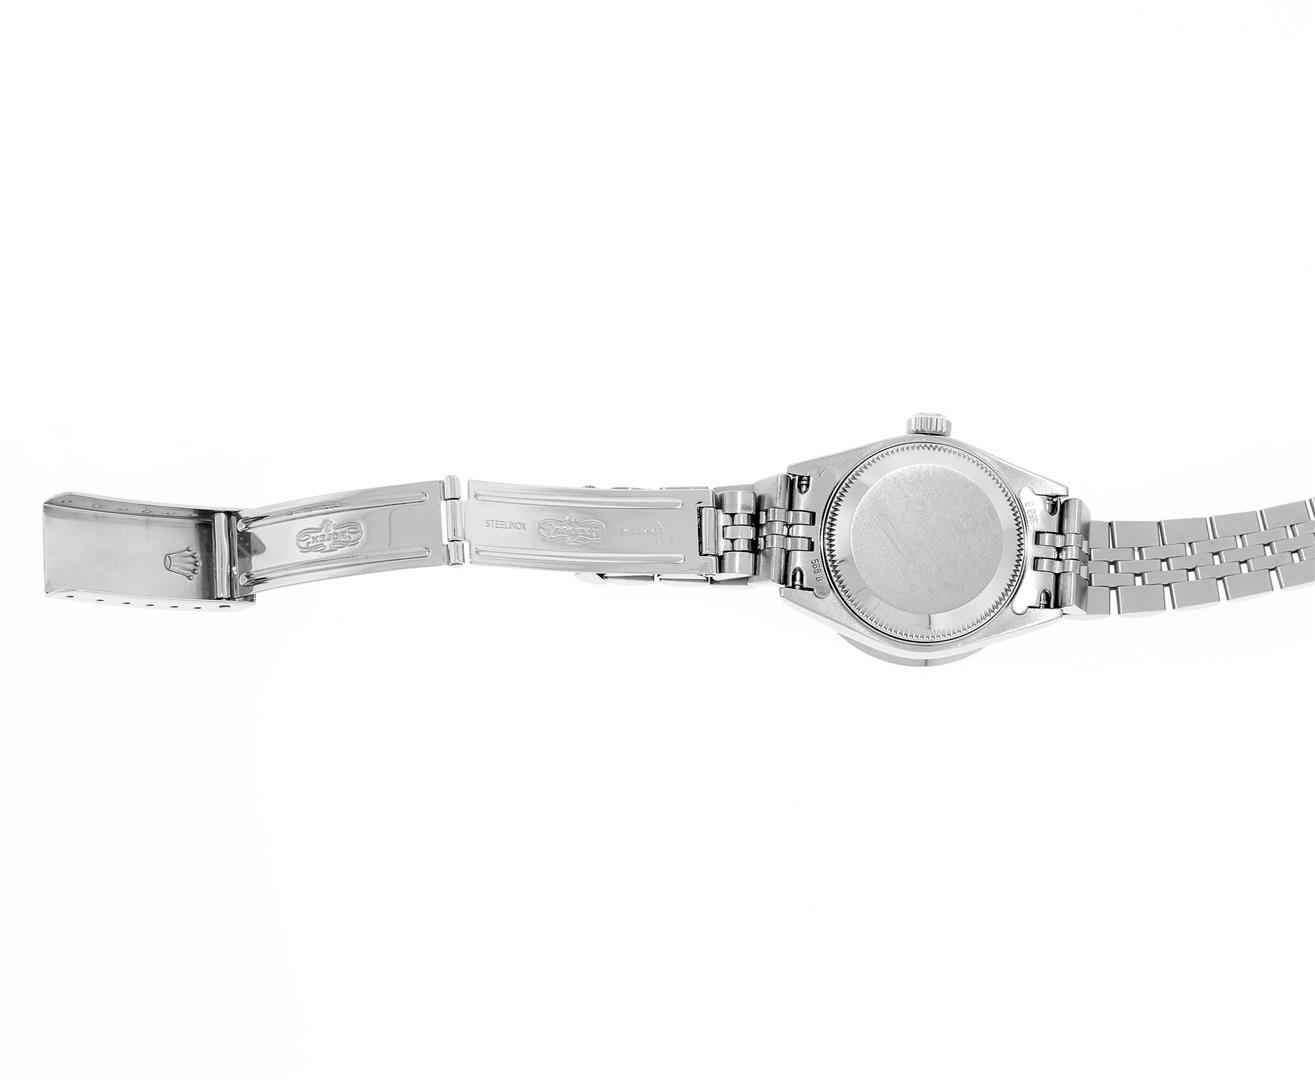 Rolex Ladies Quickset Stainless Steel White Arabic Dial Diamond Bezel Wristwatch